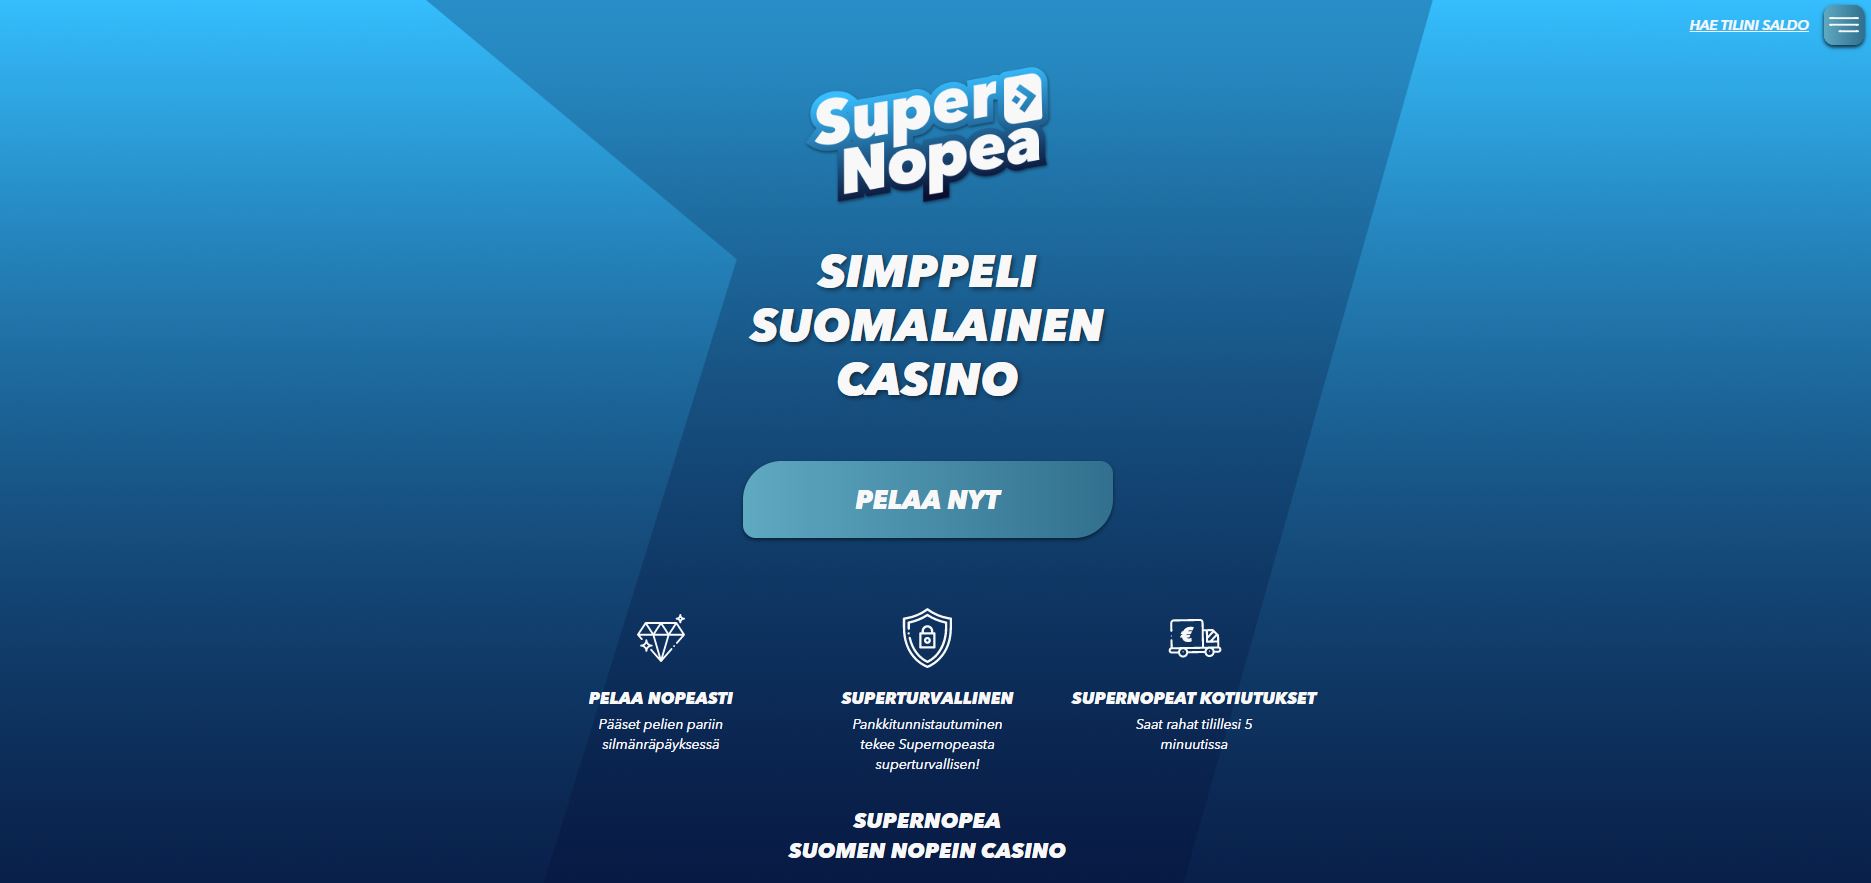 SuperNopea on simppeli suomalainen kasino